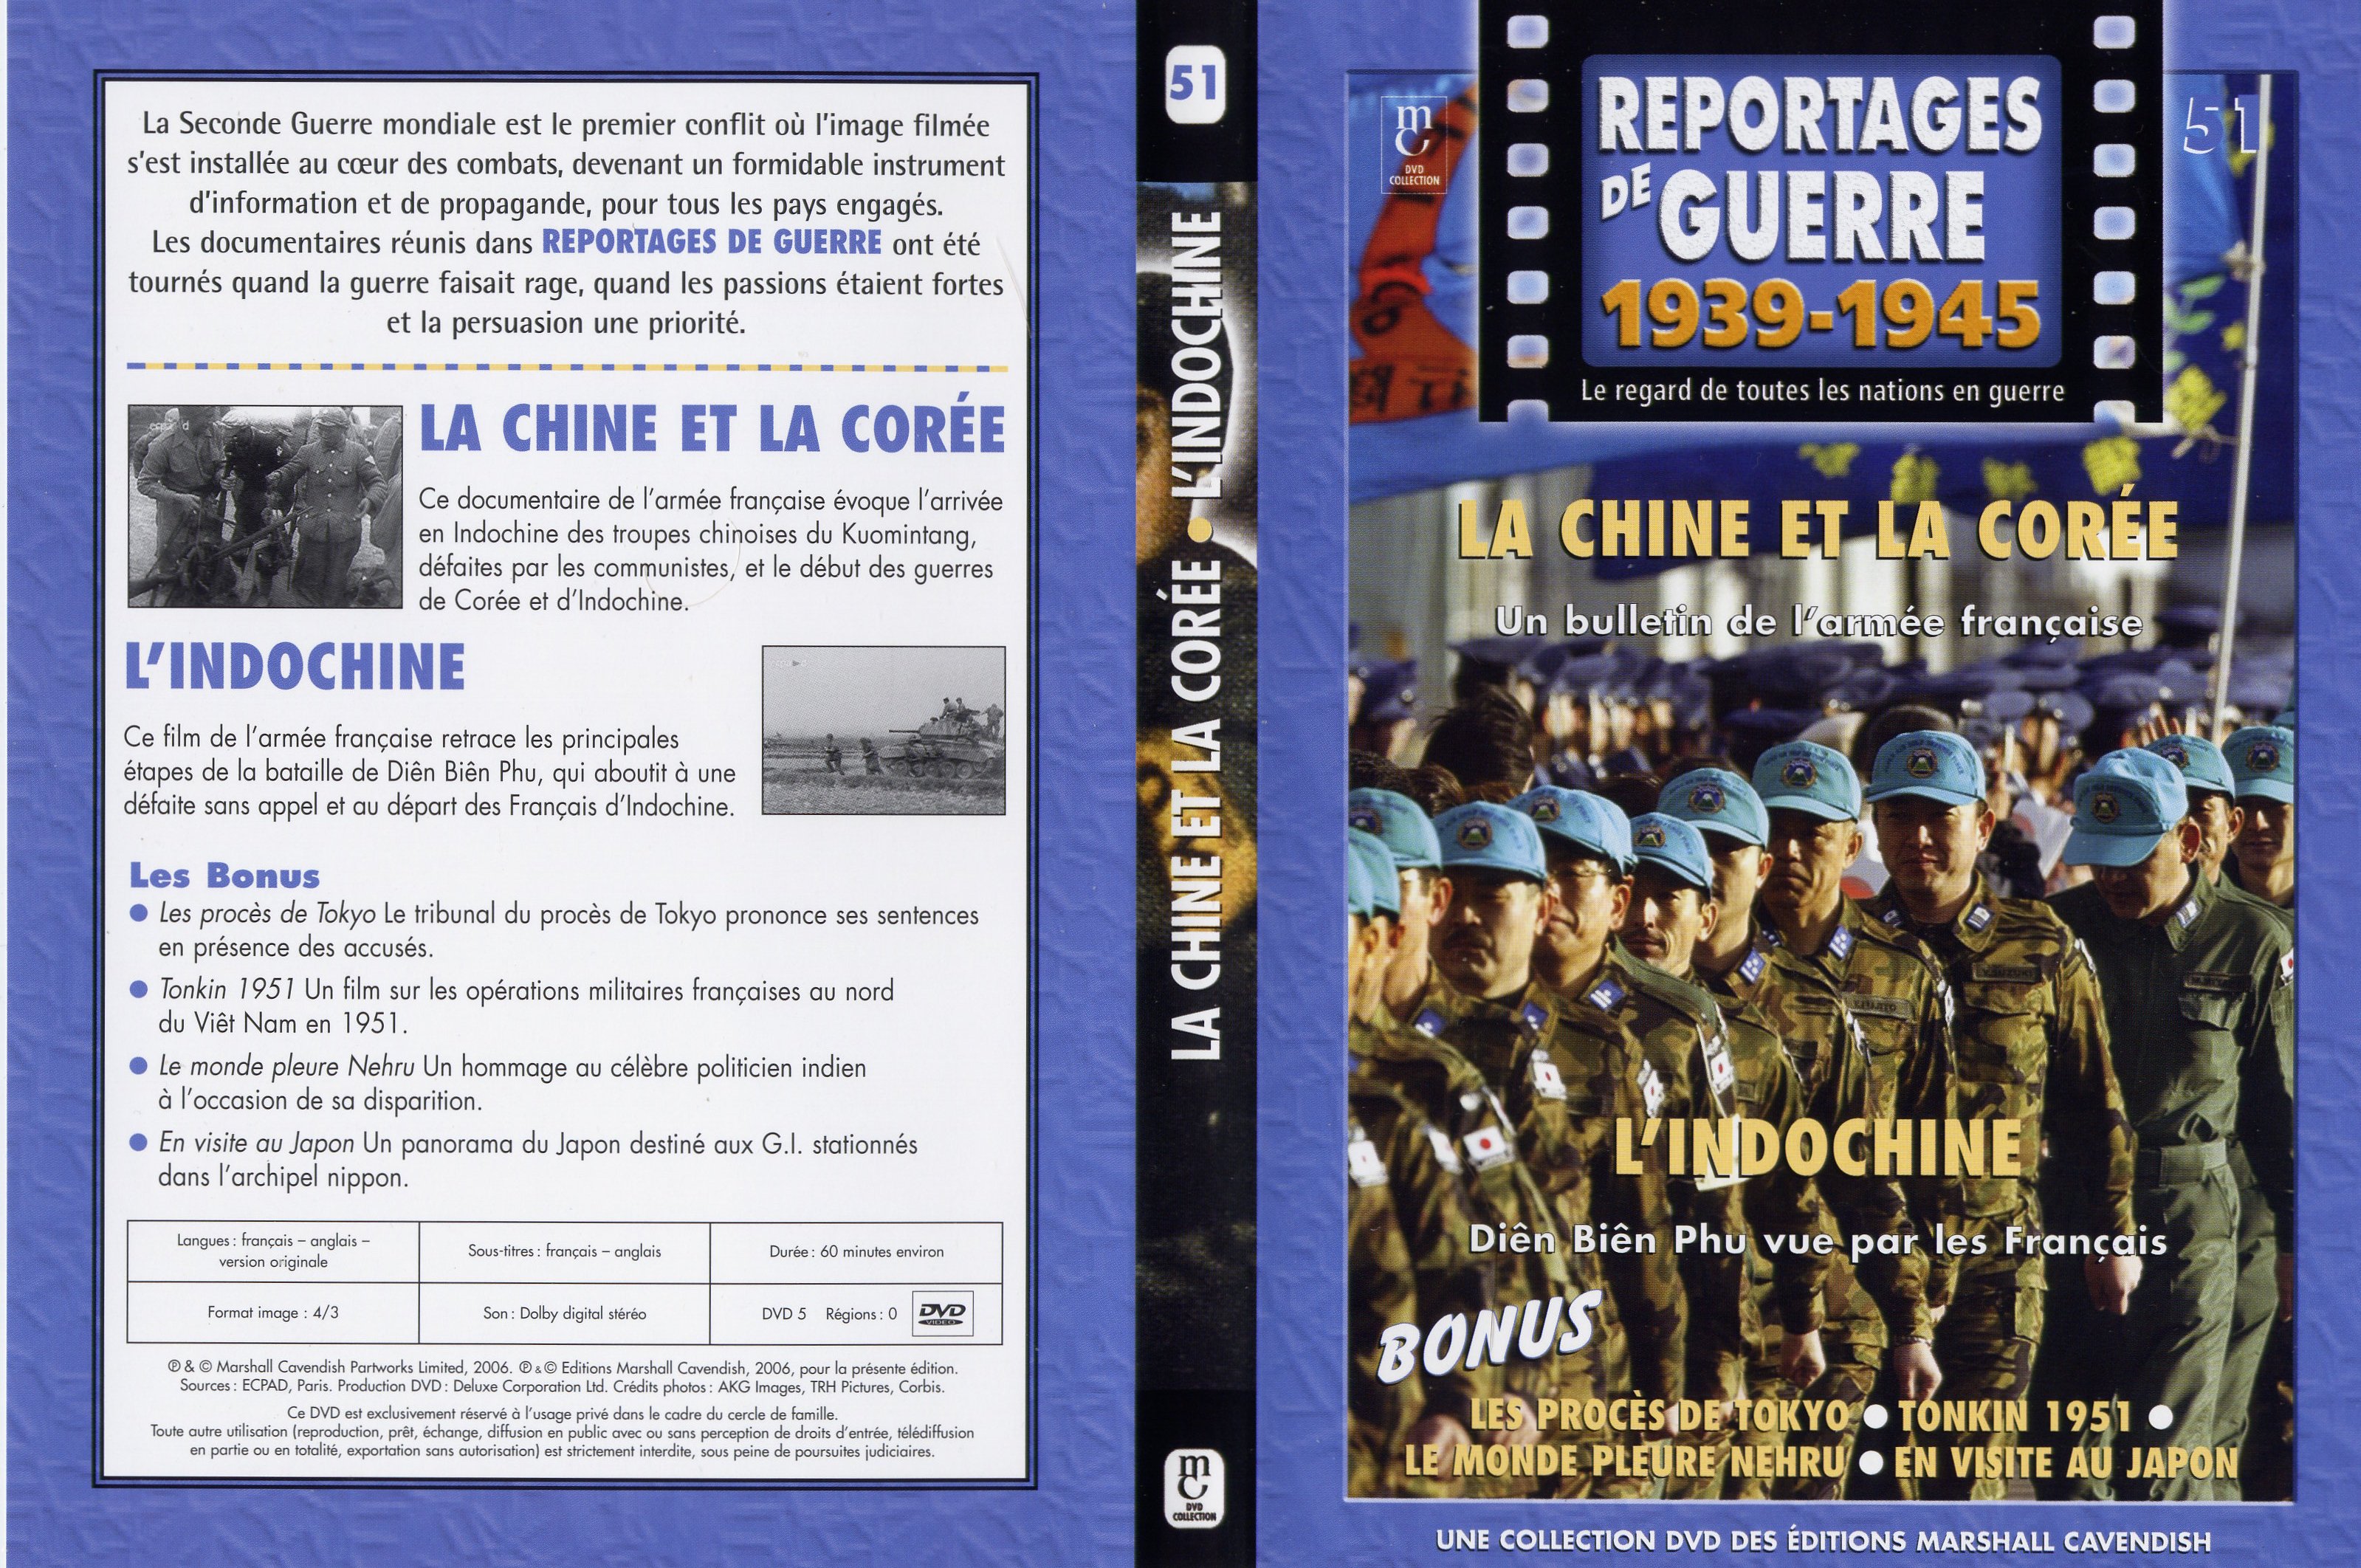 Jaquette DVD Reportages de guerre vol 51